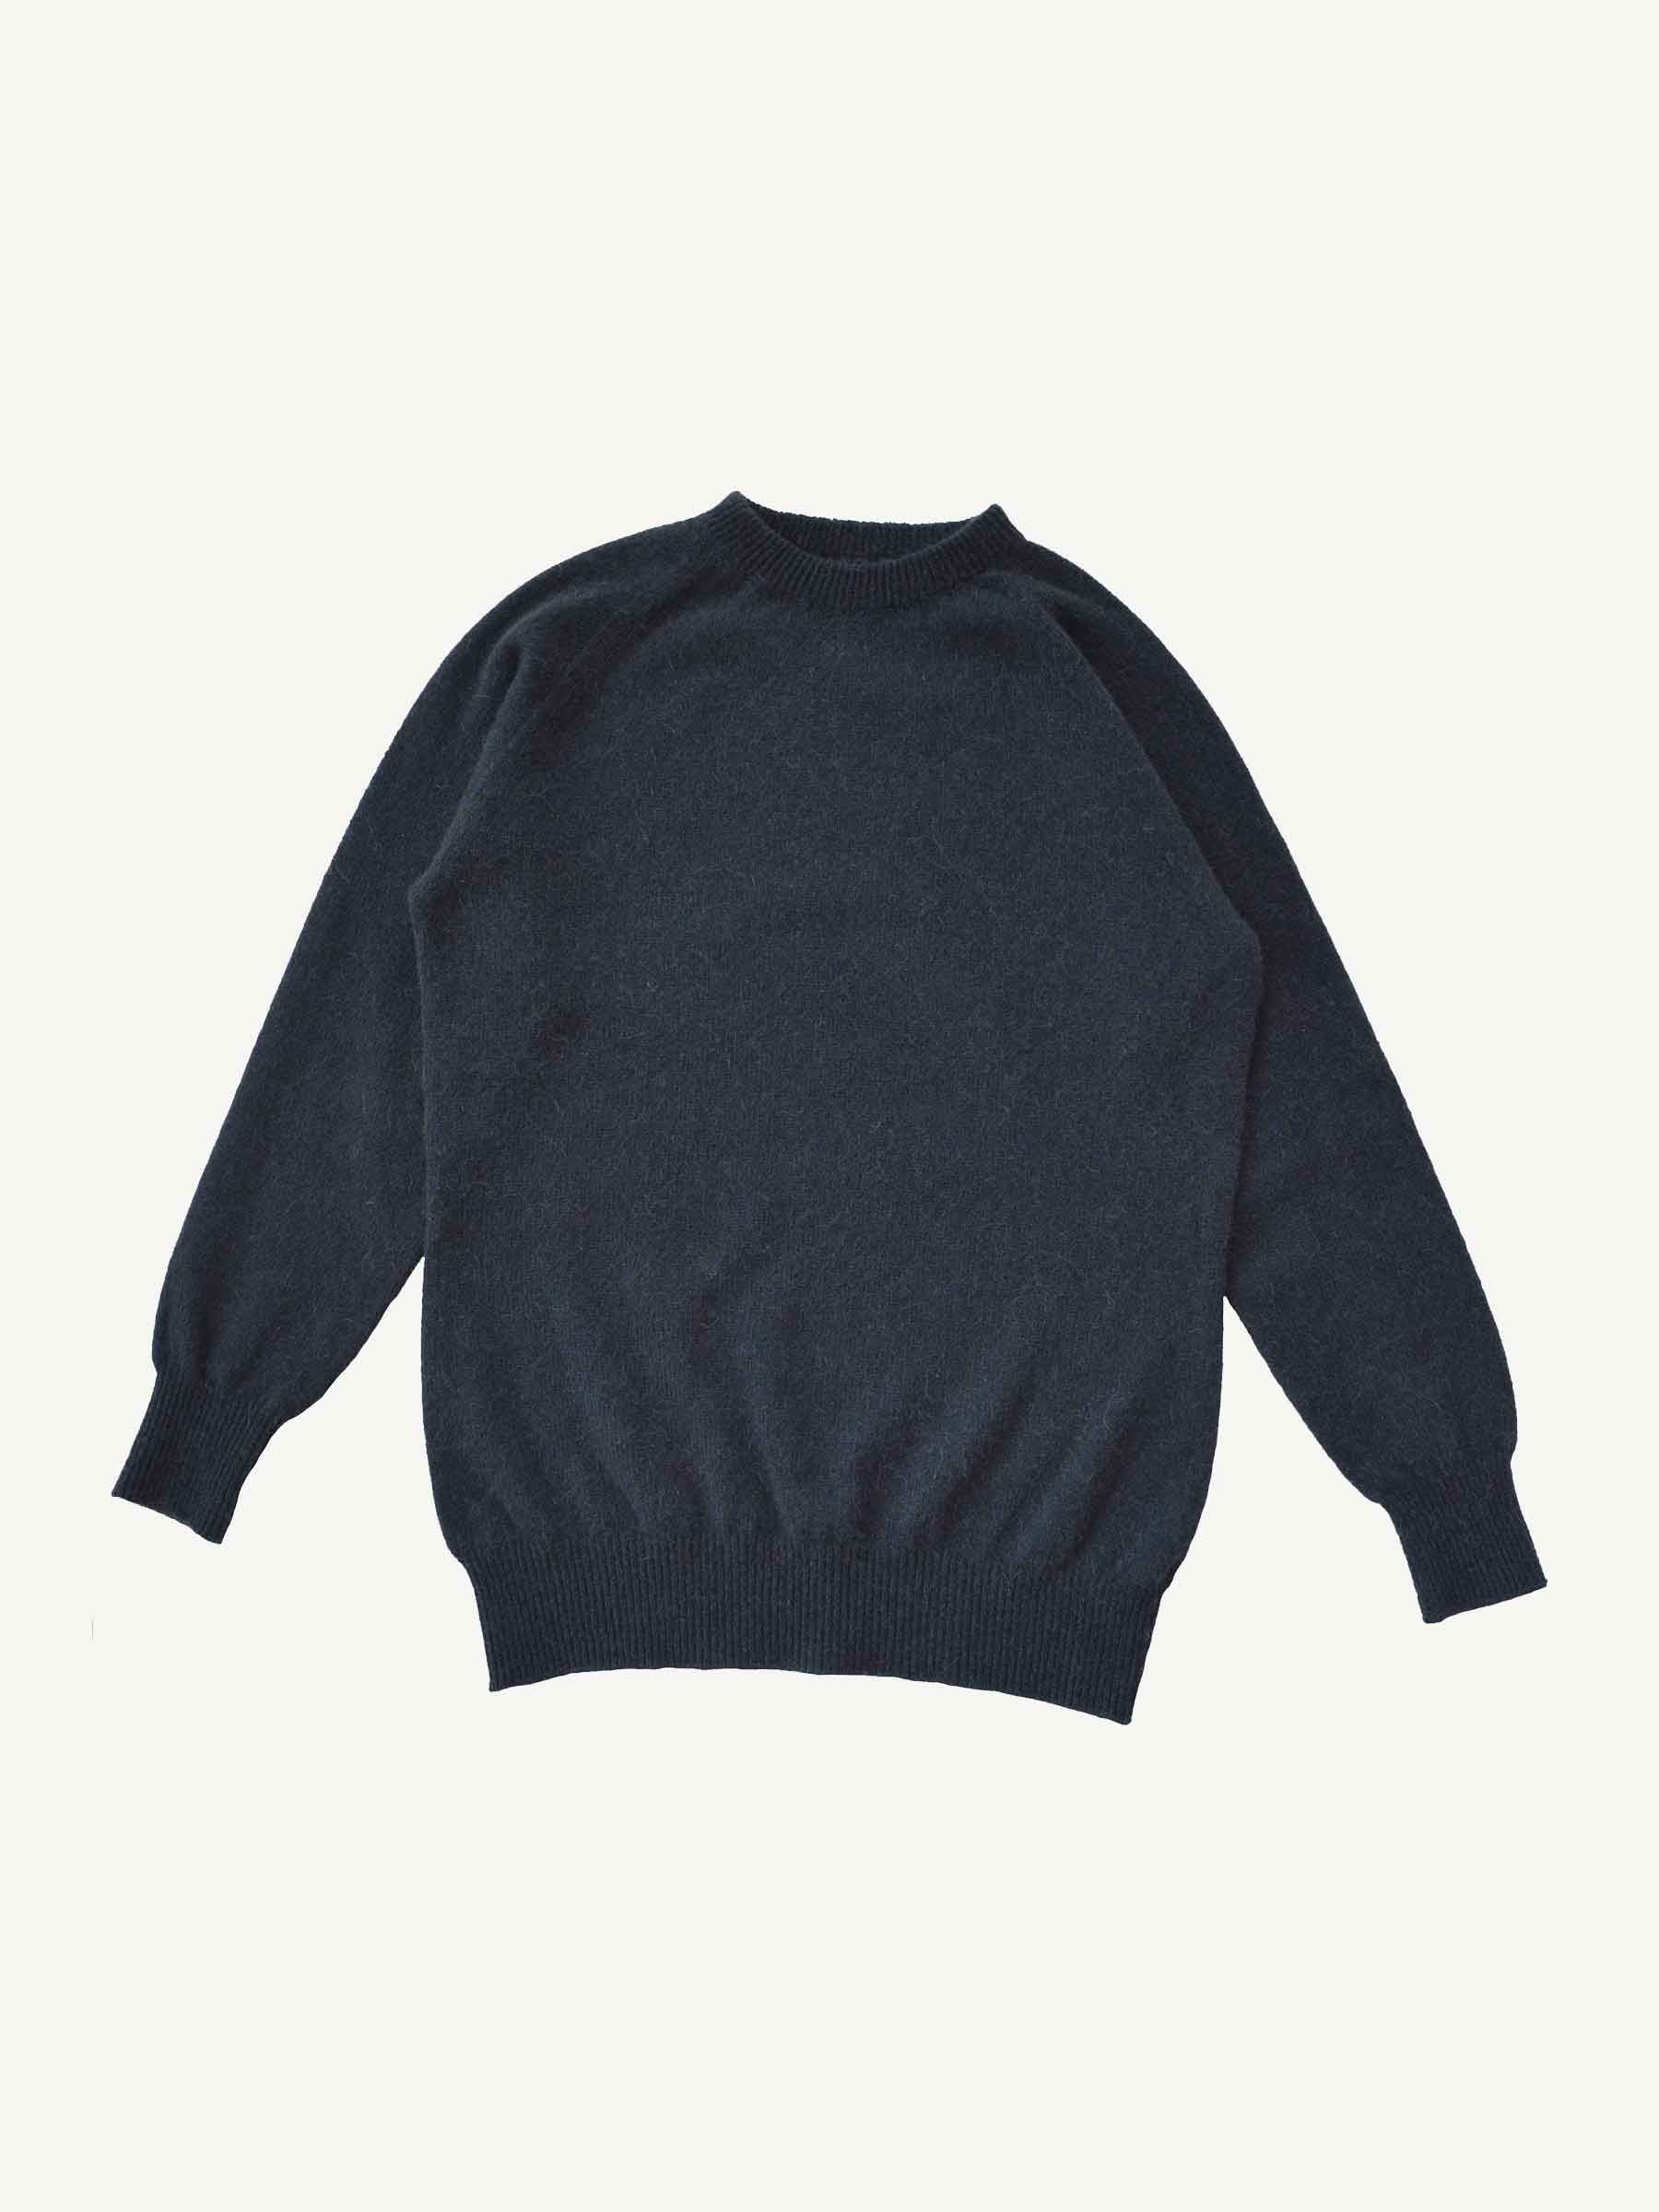 Kori KUTEK Alpaca Wool Sweater Mens S